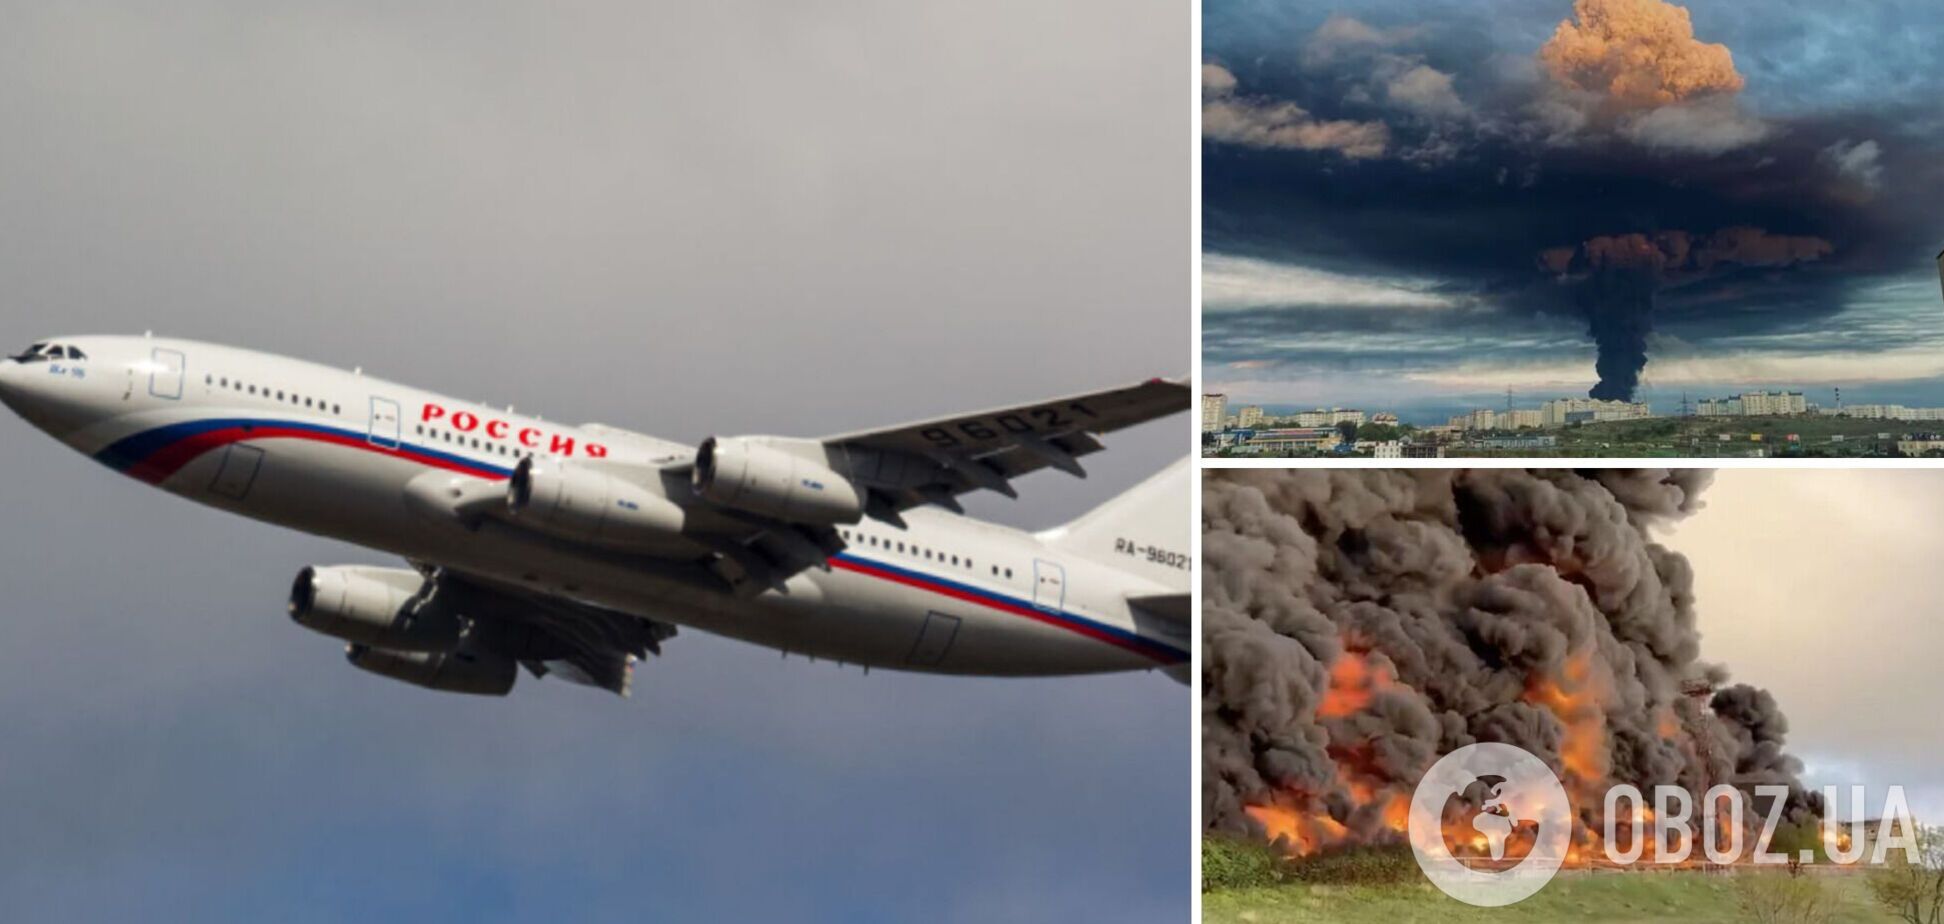 Після 'бавовни' у Севастополі з Криму до Москви полетів урядовий літак РФ